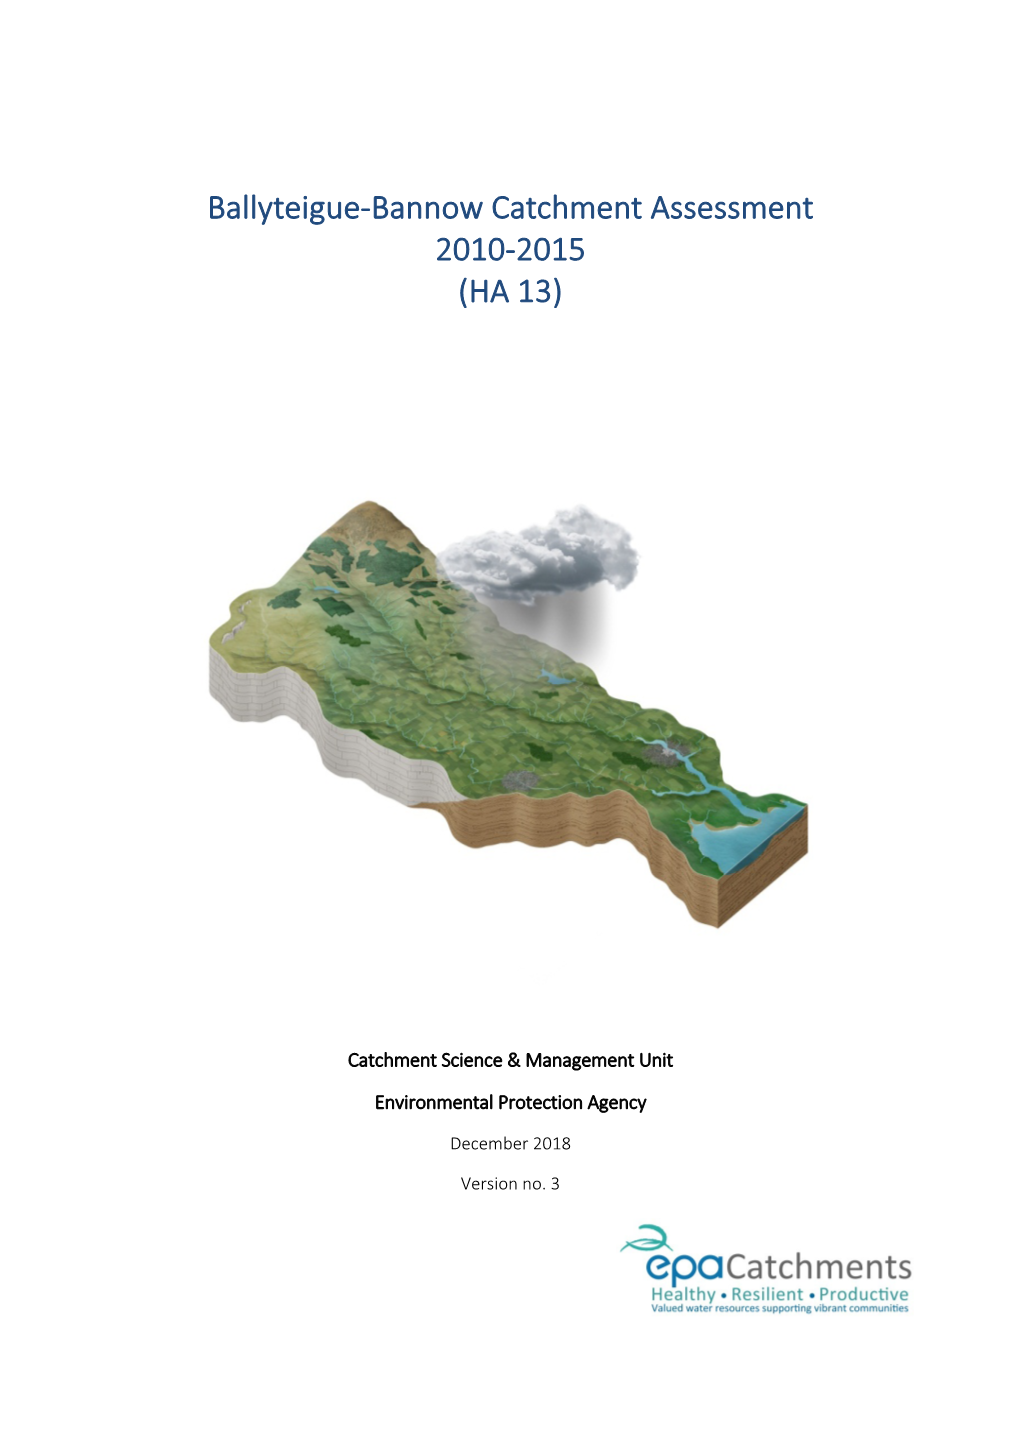 Ballyteigue-Bannow Catchment Assessment 2010-2015 (HA 13)